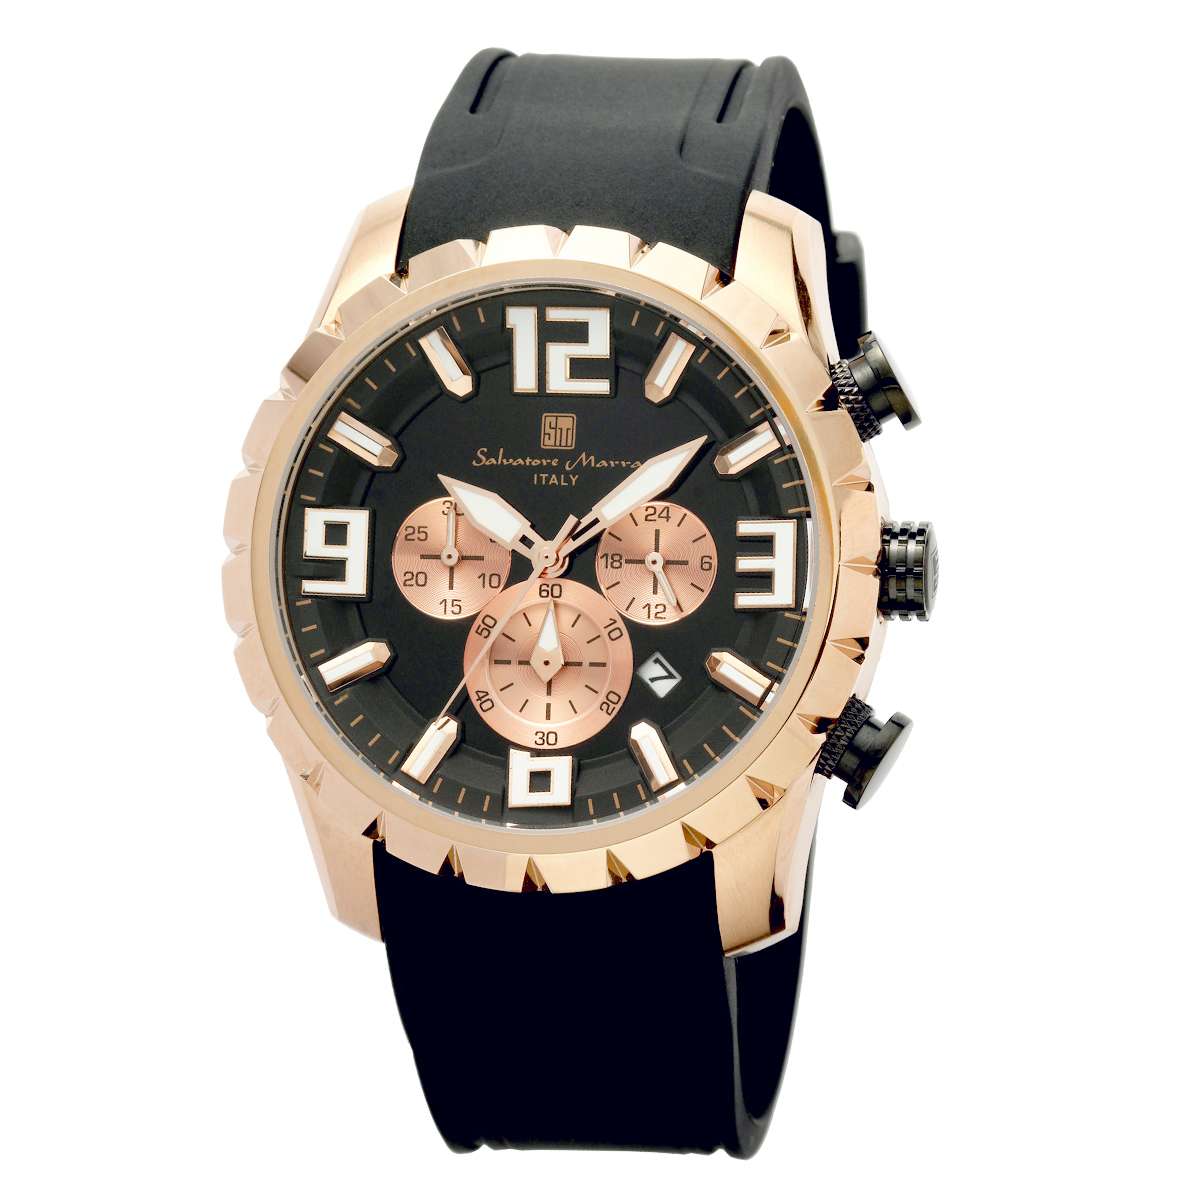 サルバトーレマーラ Salavatore Marra 腕時計 SM22111 PGBKBK クロノグラフ マルチファンクション クオーツ メンズ腕時計 ラバーベルト腕